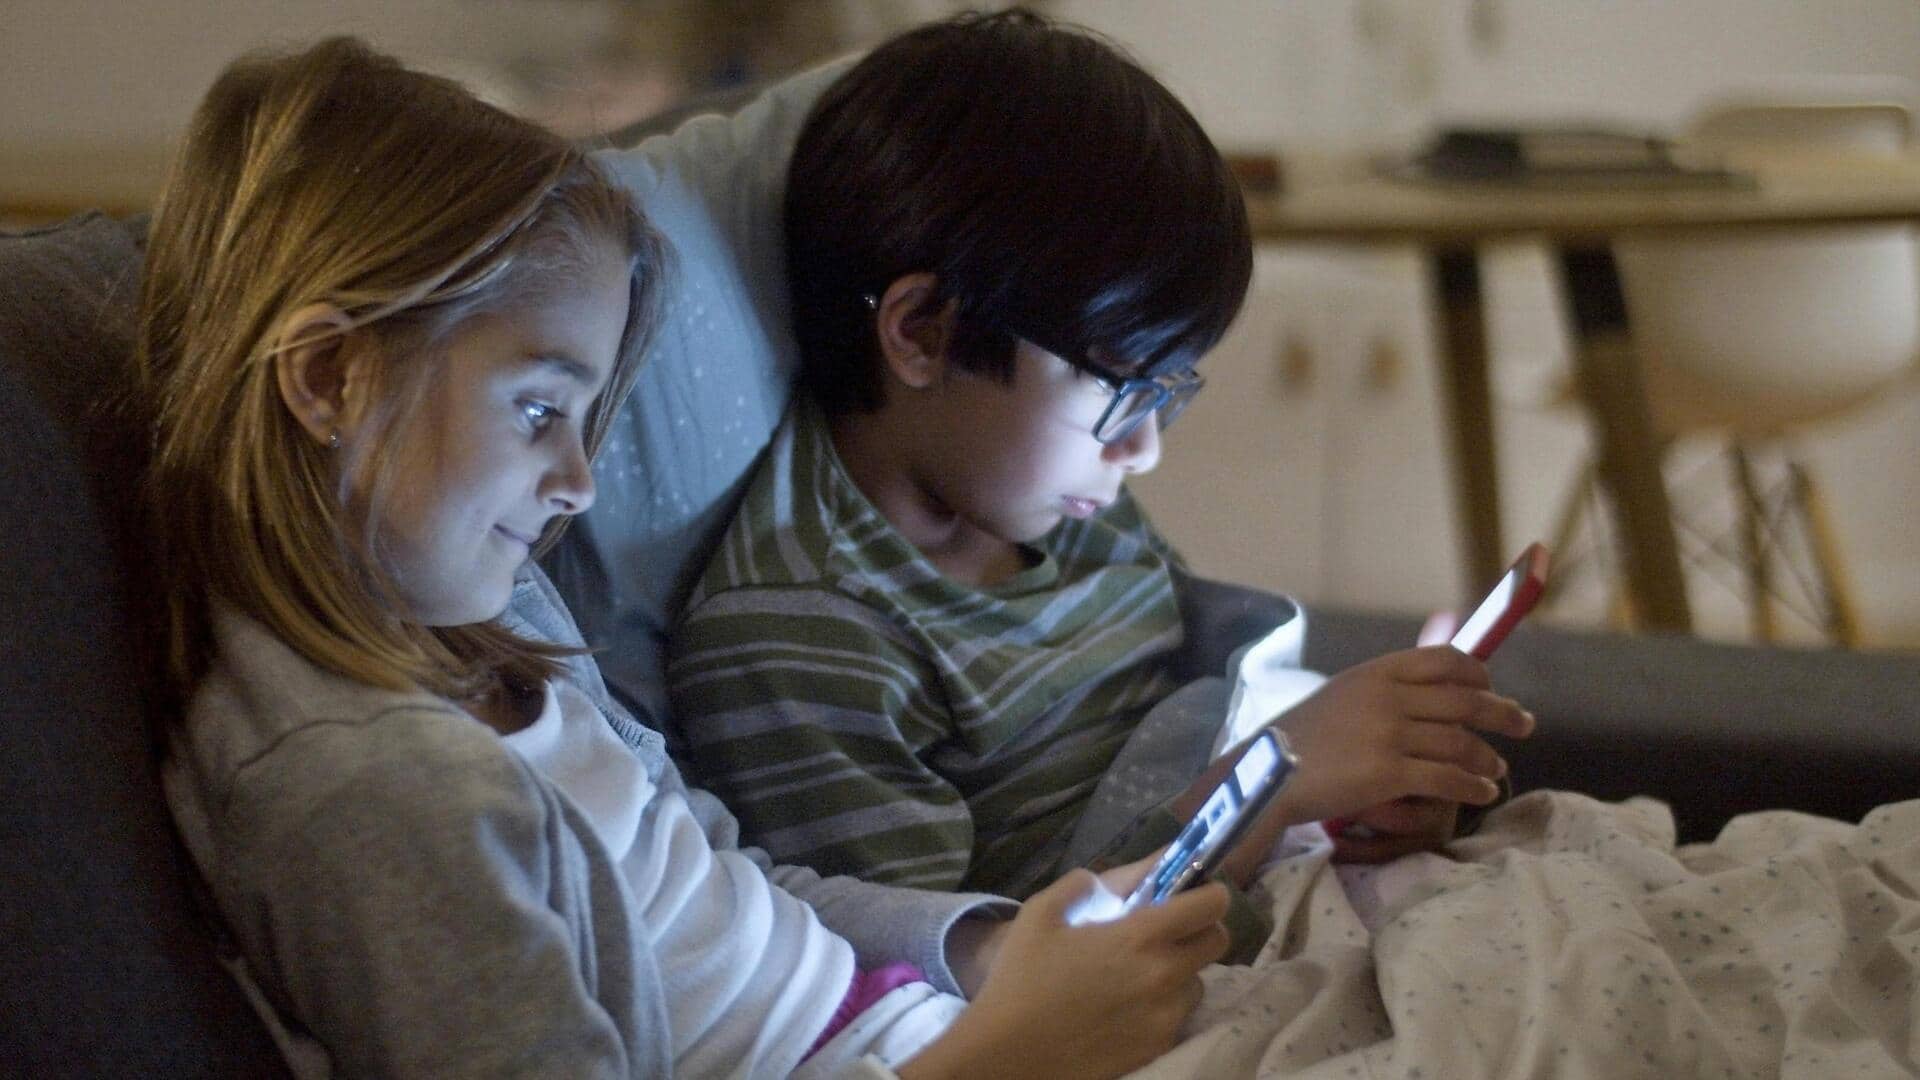 ब्रिटेन: 3 से 4 साल के बच्चों के हाथों में स्मार्टफोन बना परेशानी, सख्ती की तैयारी